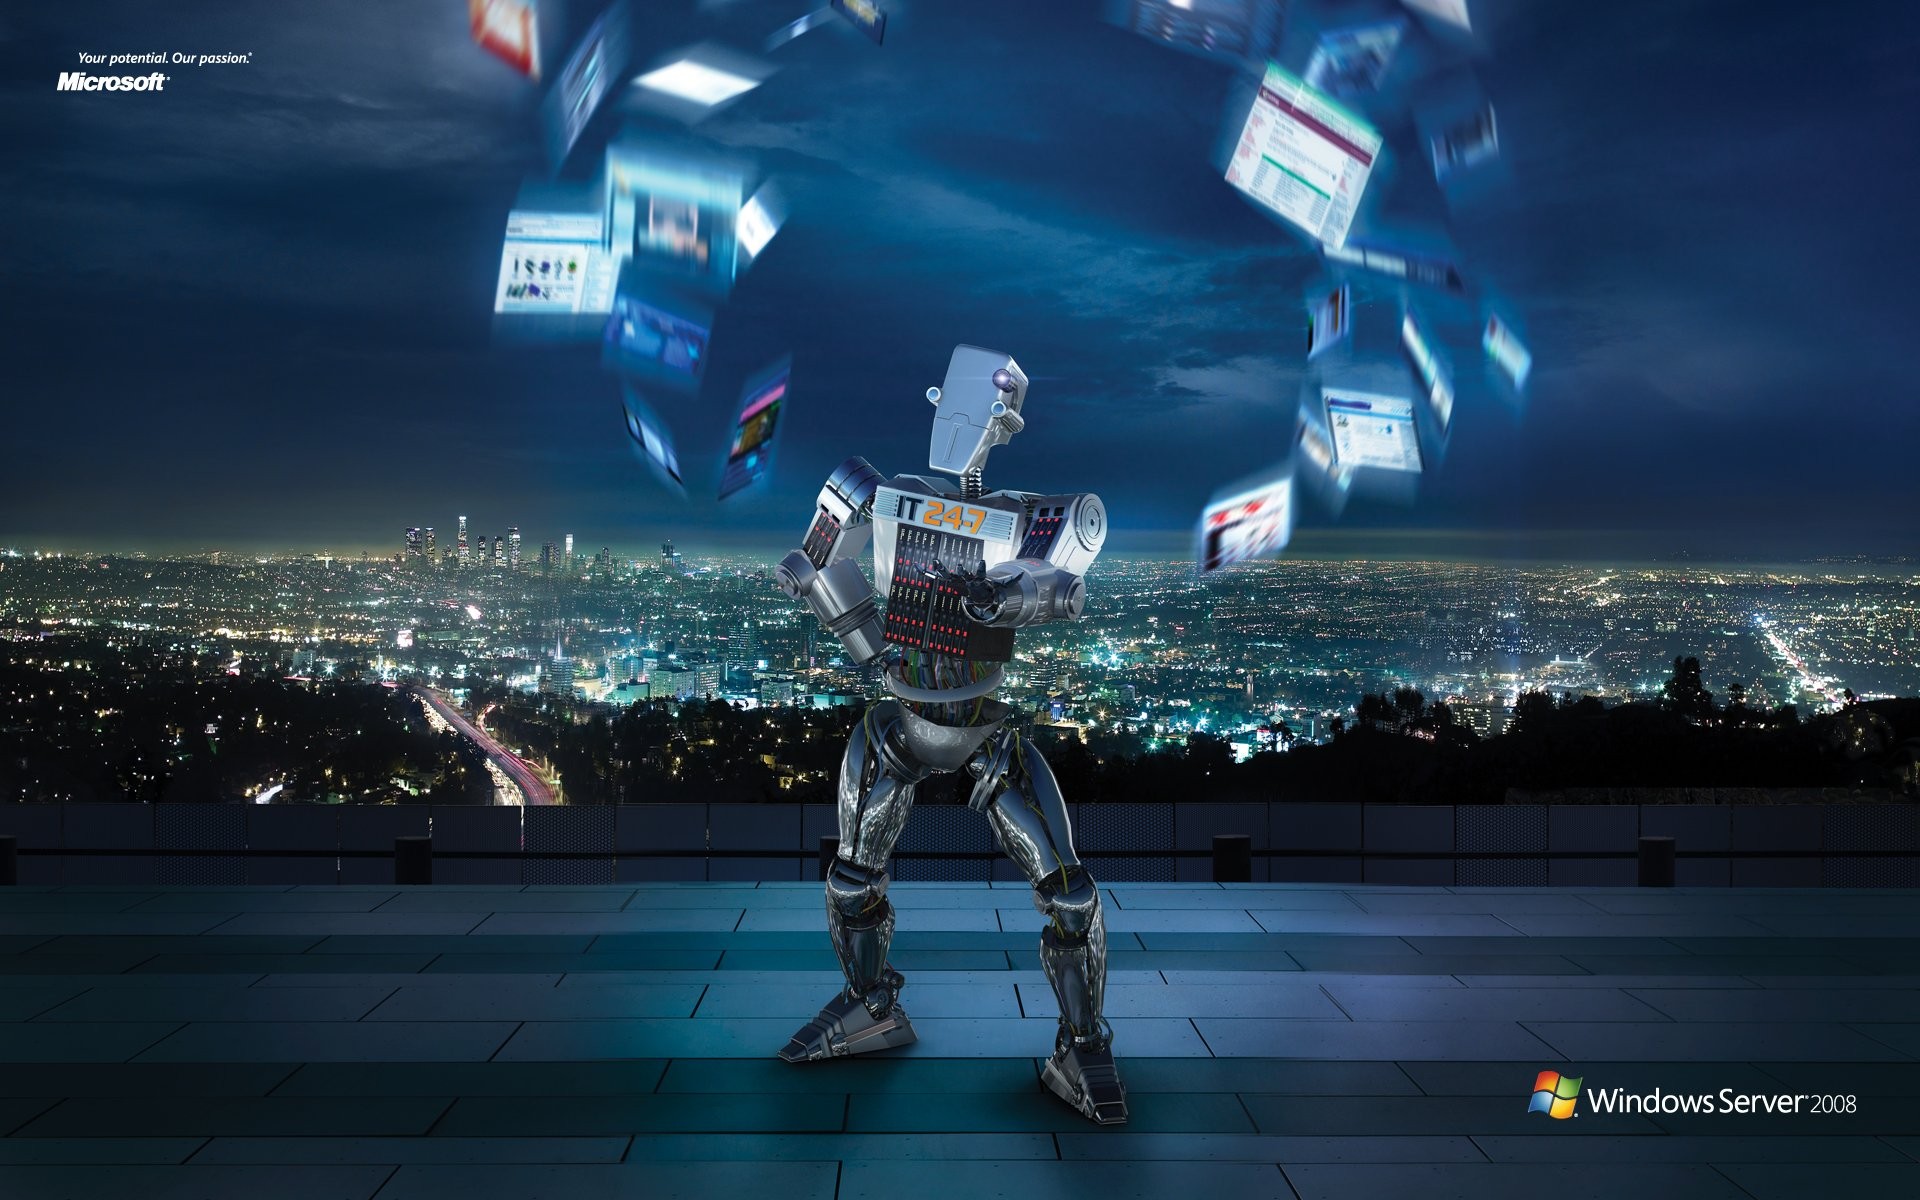 Windows IT Robot ad #1 - 1920x1200